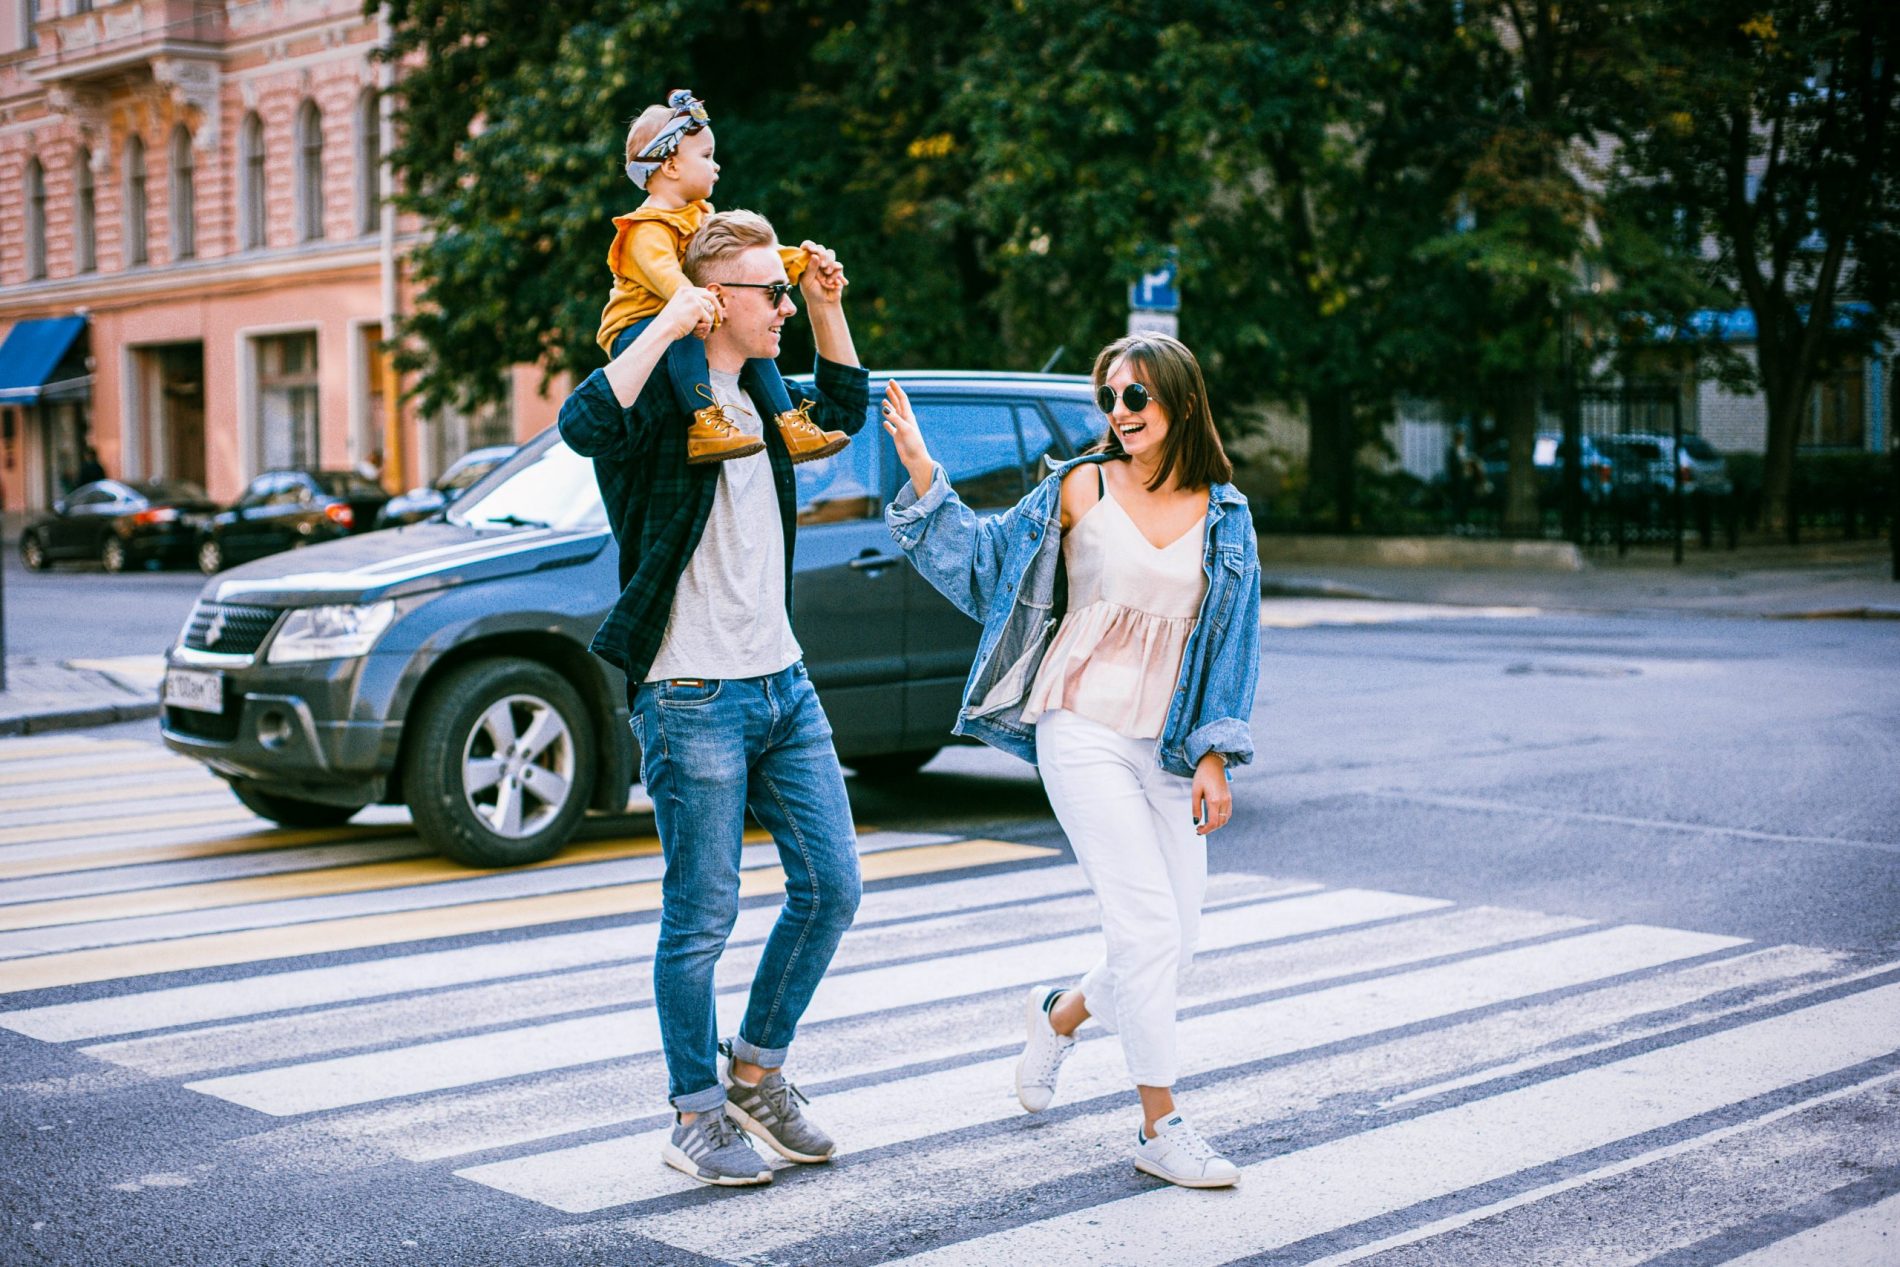 Mobile App Making Pedestrian Crossing Safer For Older People